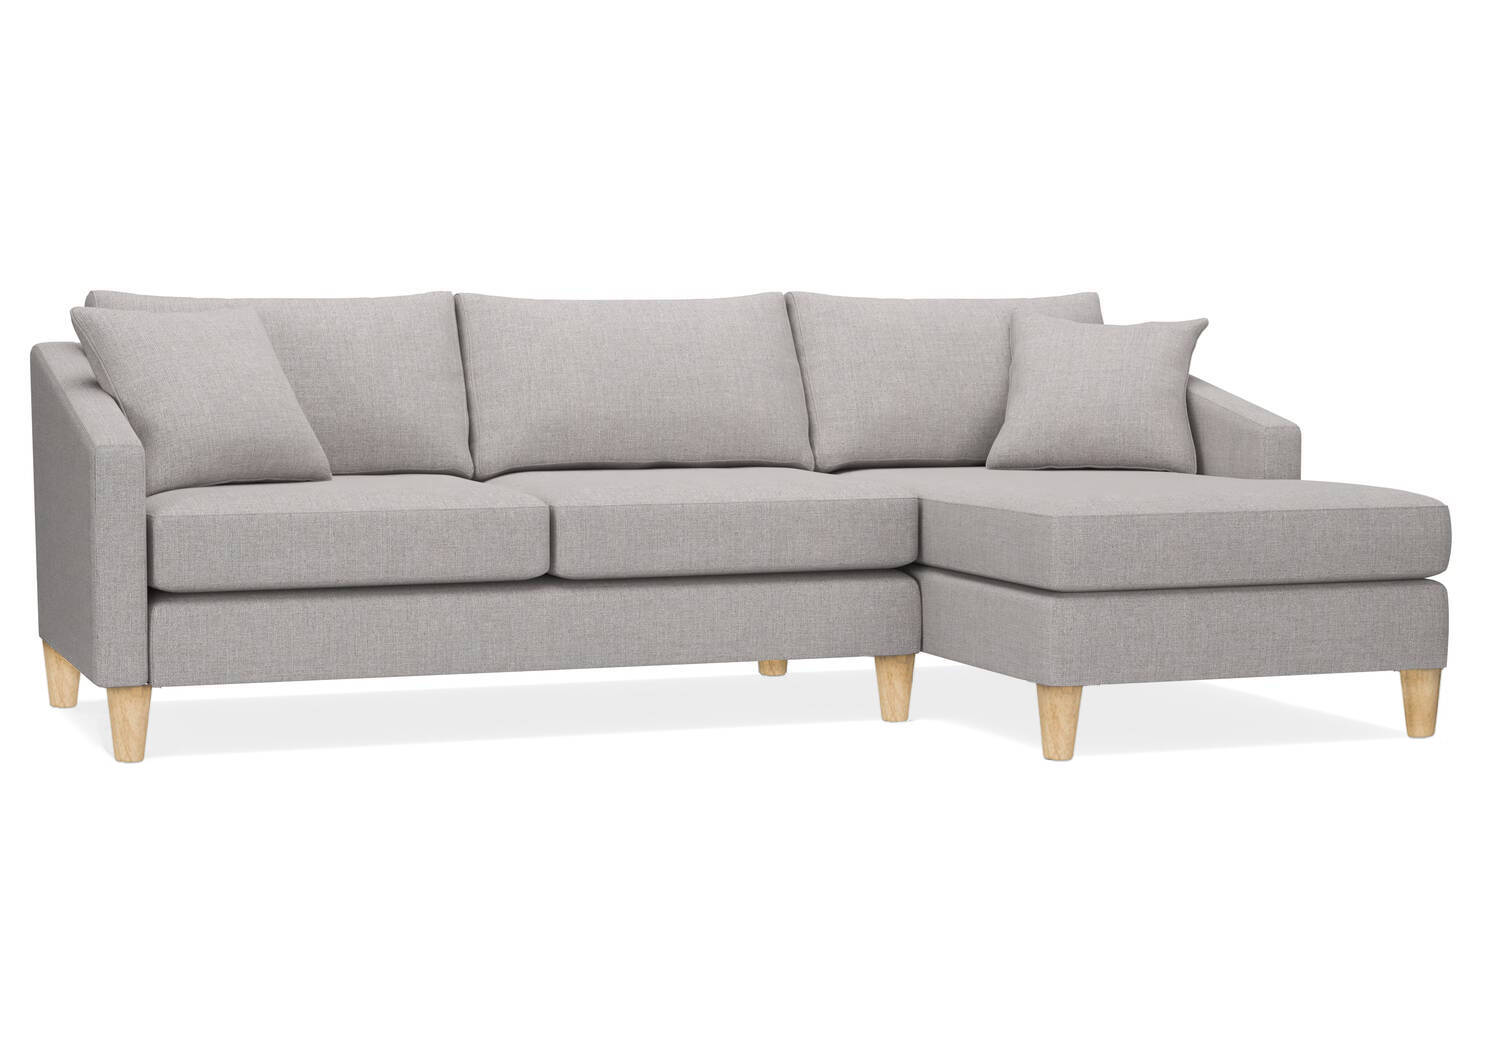 Austin Custom Sectional Sofa Chaise